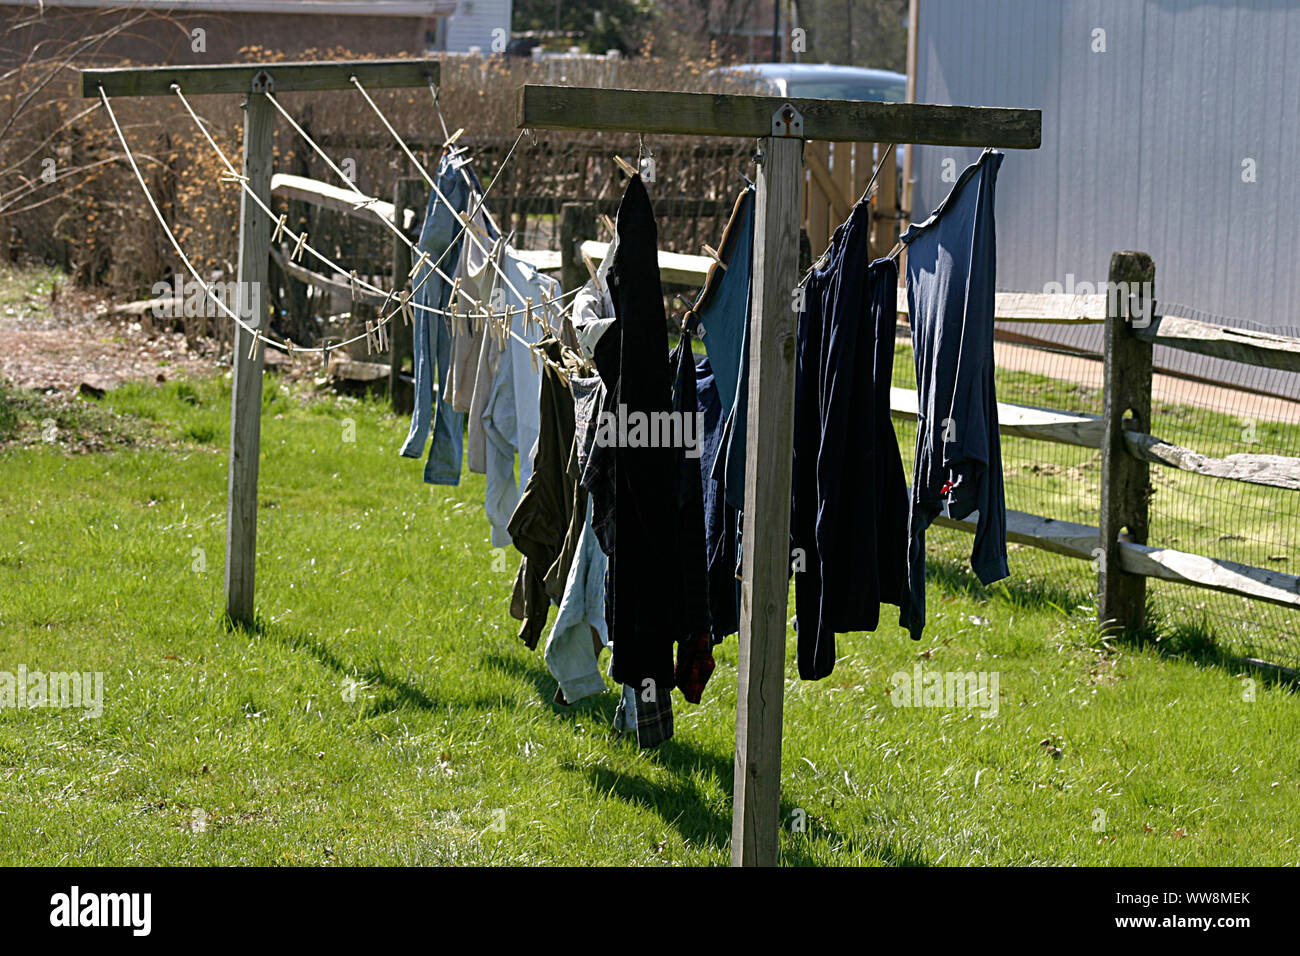 Servicio de lavandería de secado en tendedero en el patio Fotografía de  stock - Alamy